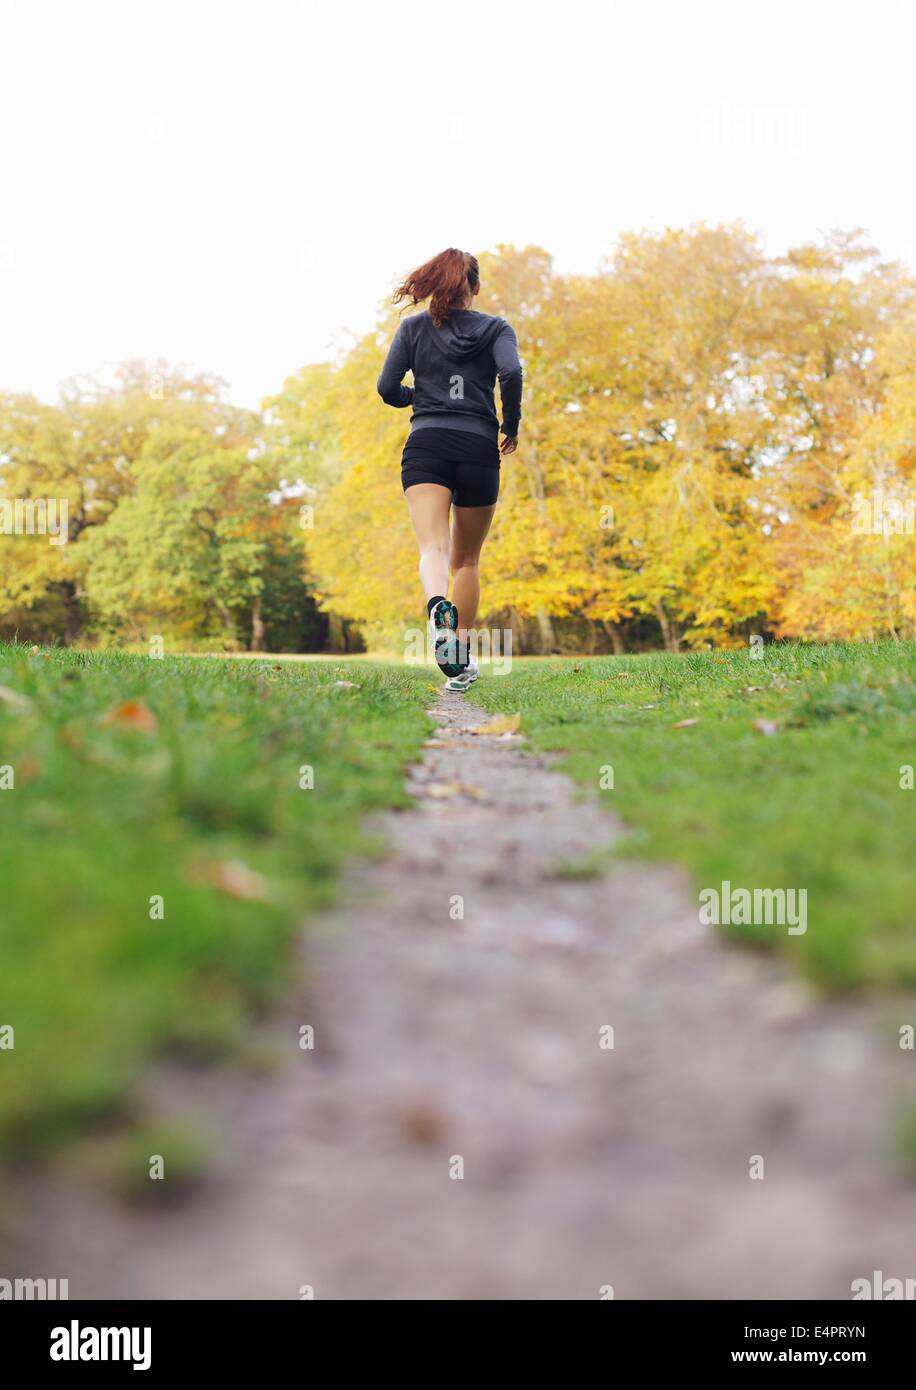 Hinten-View-Bild der jungen Frau an einem Sommertag in einem Park Joggen.  Fit und gesund Sportlerin üben im Park laufen Stockfotografie - Alamy